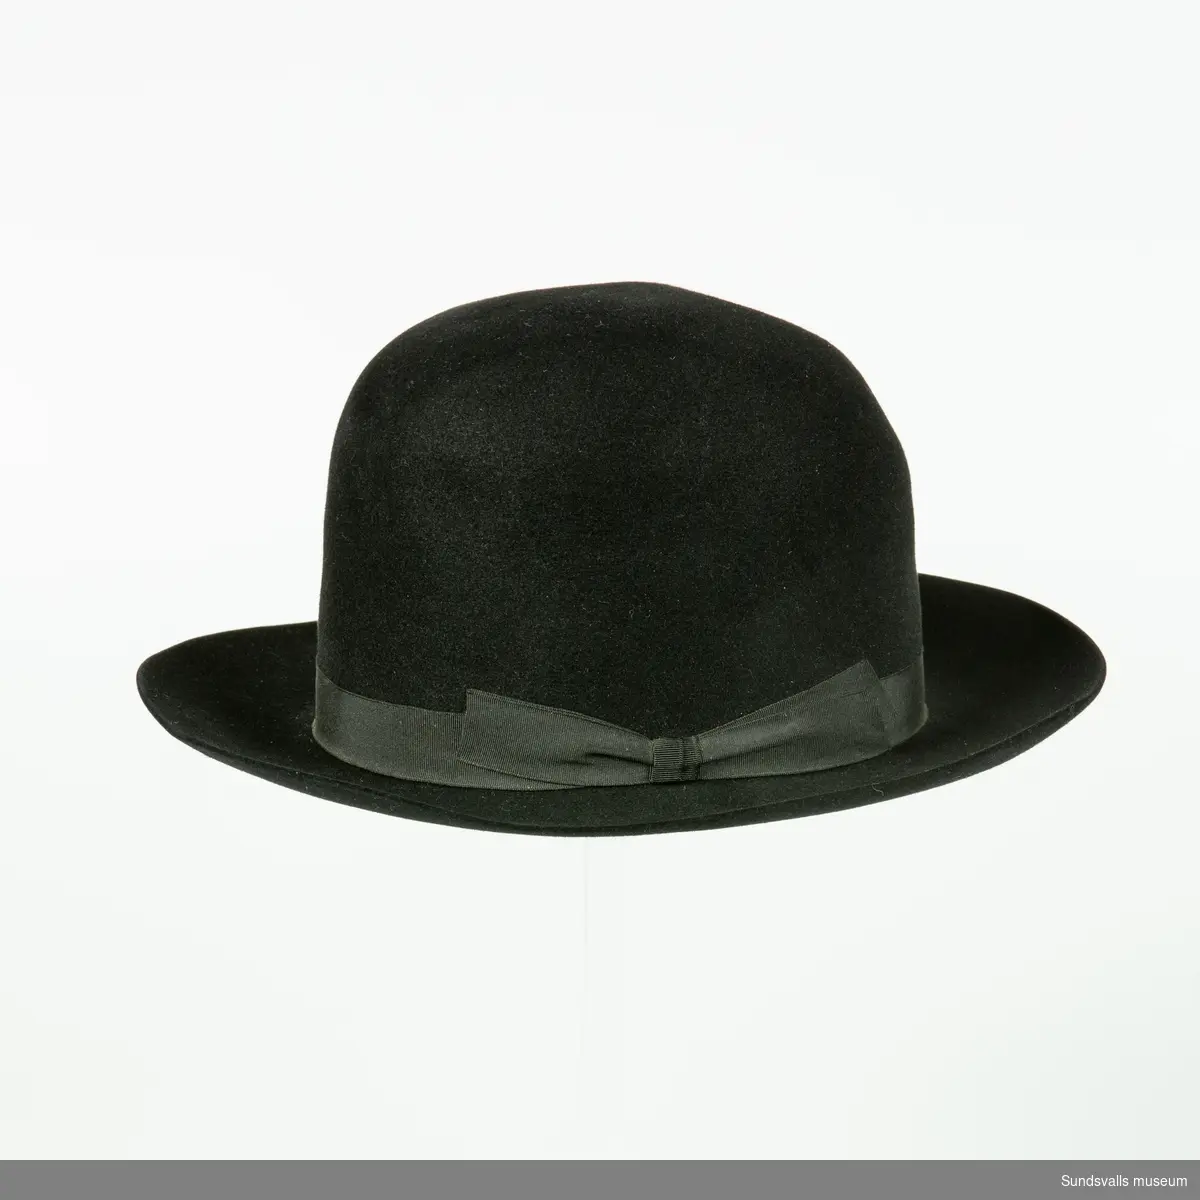 Svart herrhatt med stukad kulle och svart band. I läderbandet på insidan av hatten är 'JD' utstansat. Hatten är också märkt 'Dobesch Wien Deluxe Import'.